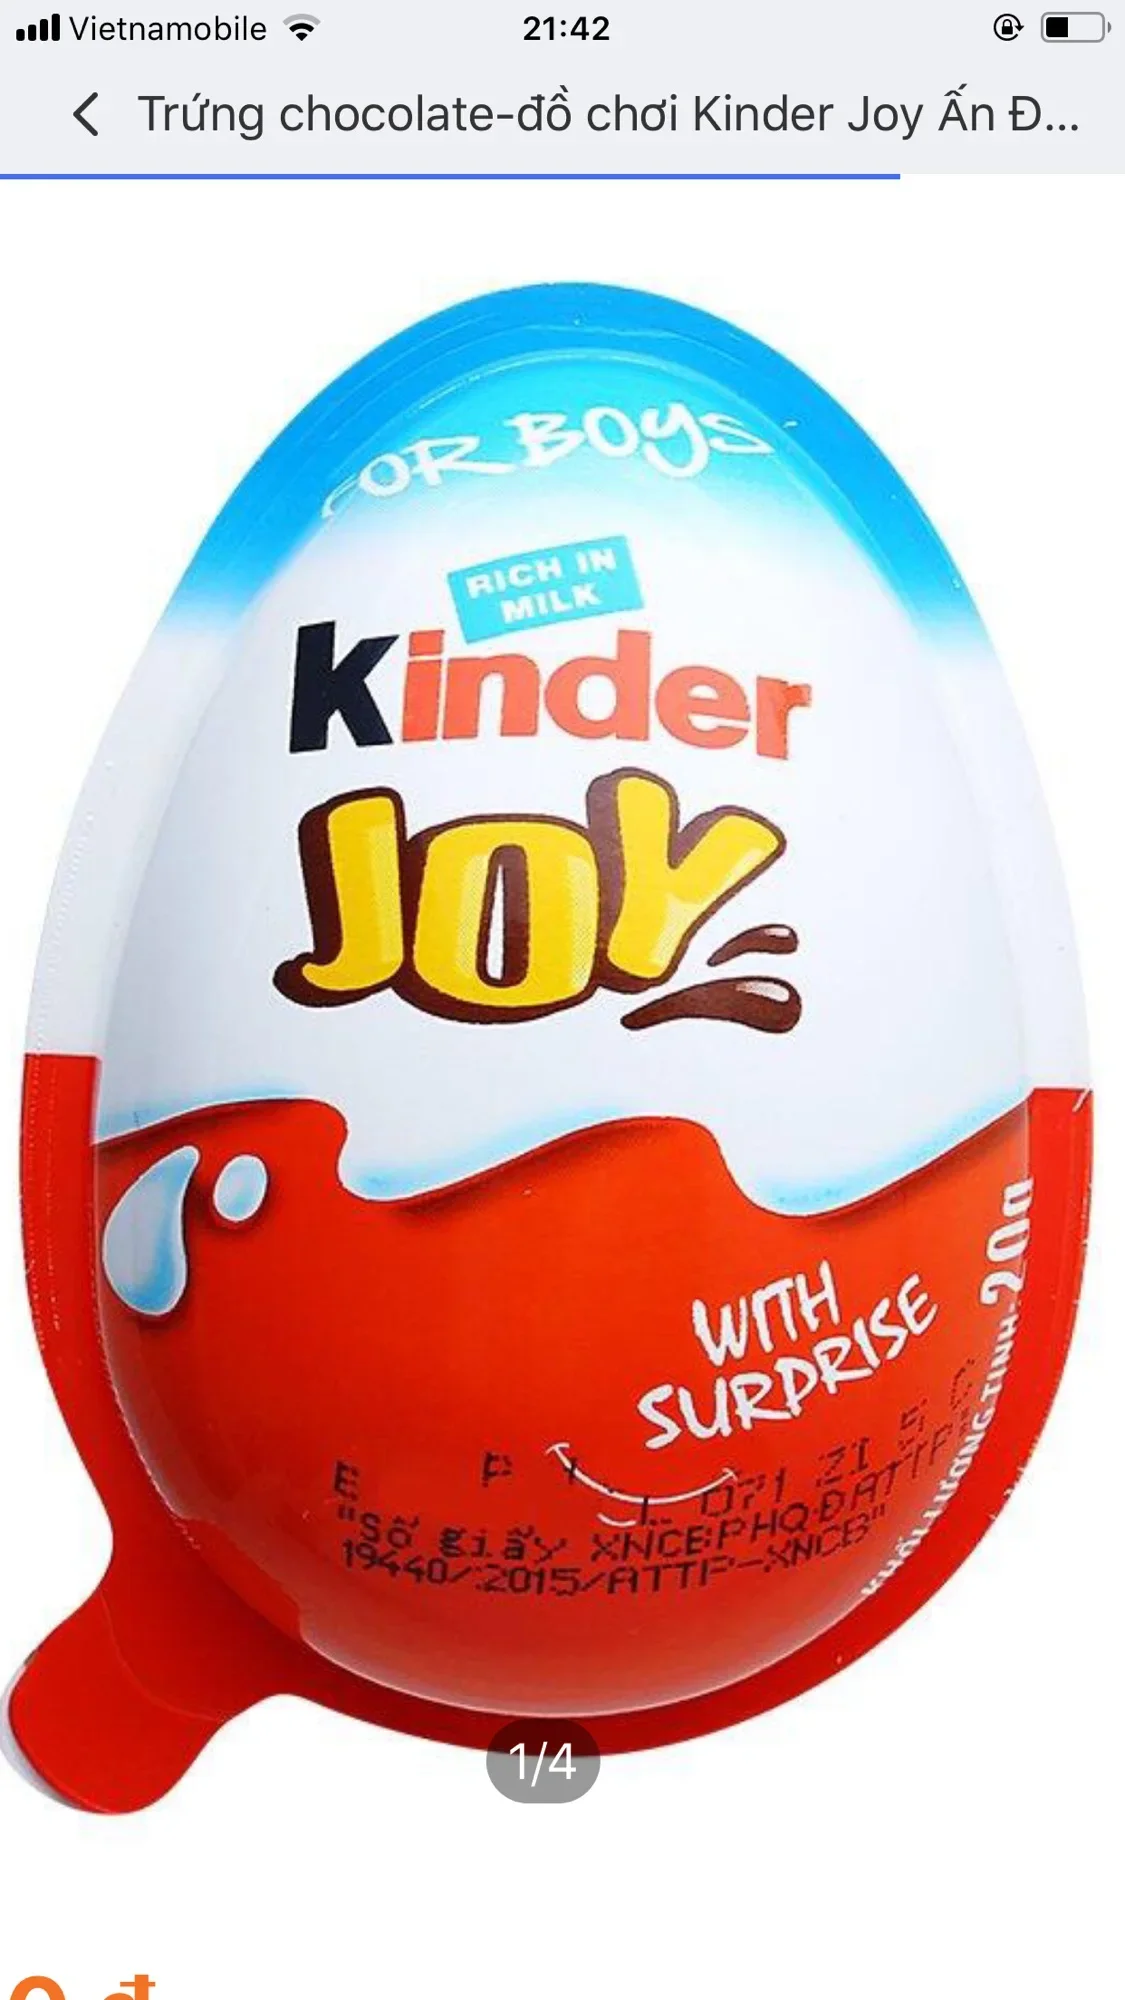 Trứng chocolate-đồ chơi Kinder Joy Ấn Độ